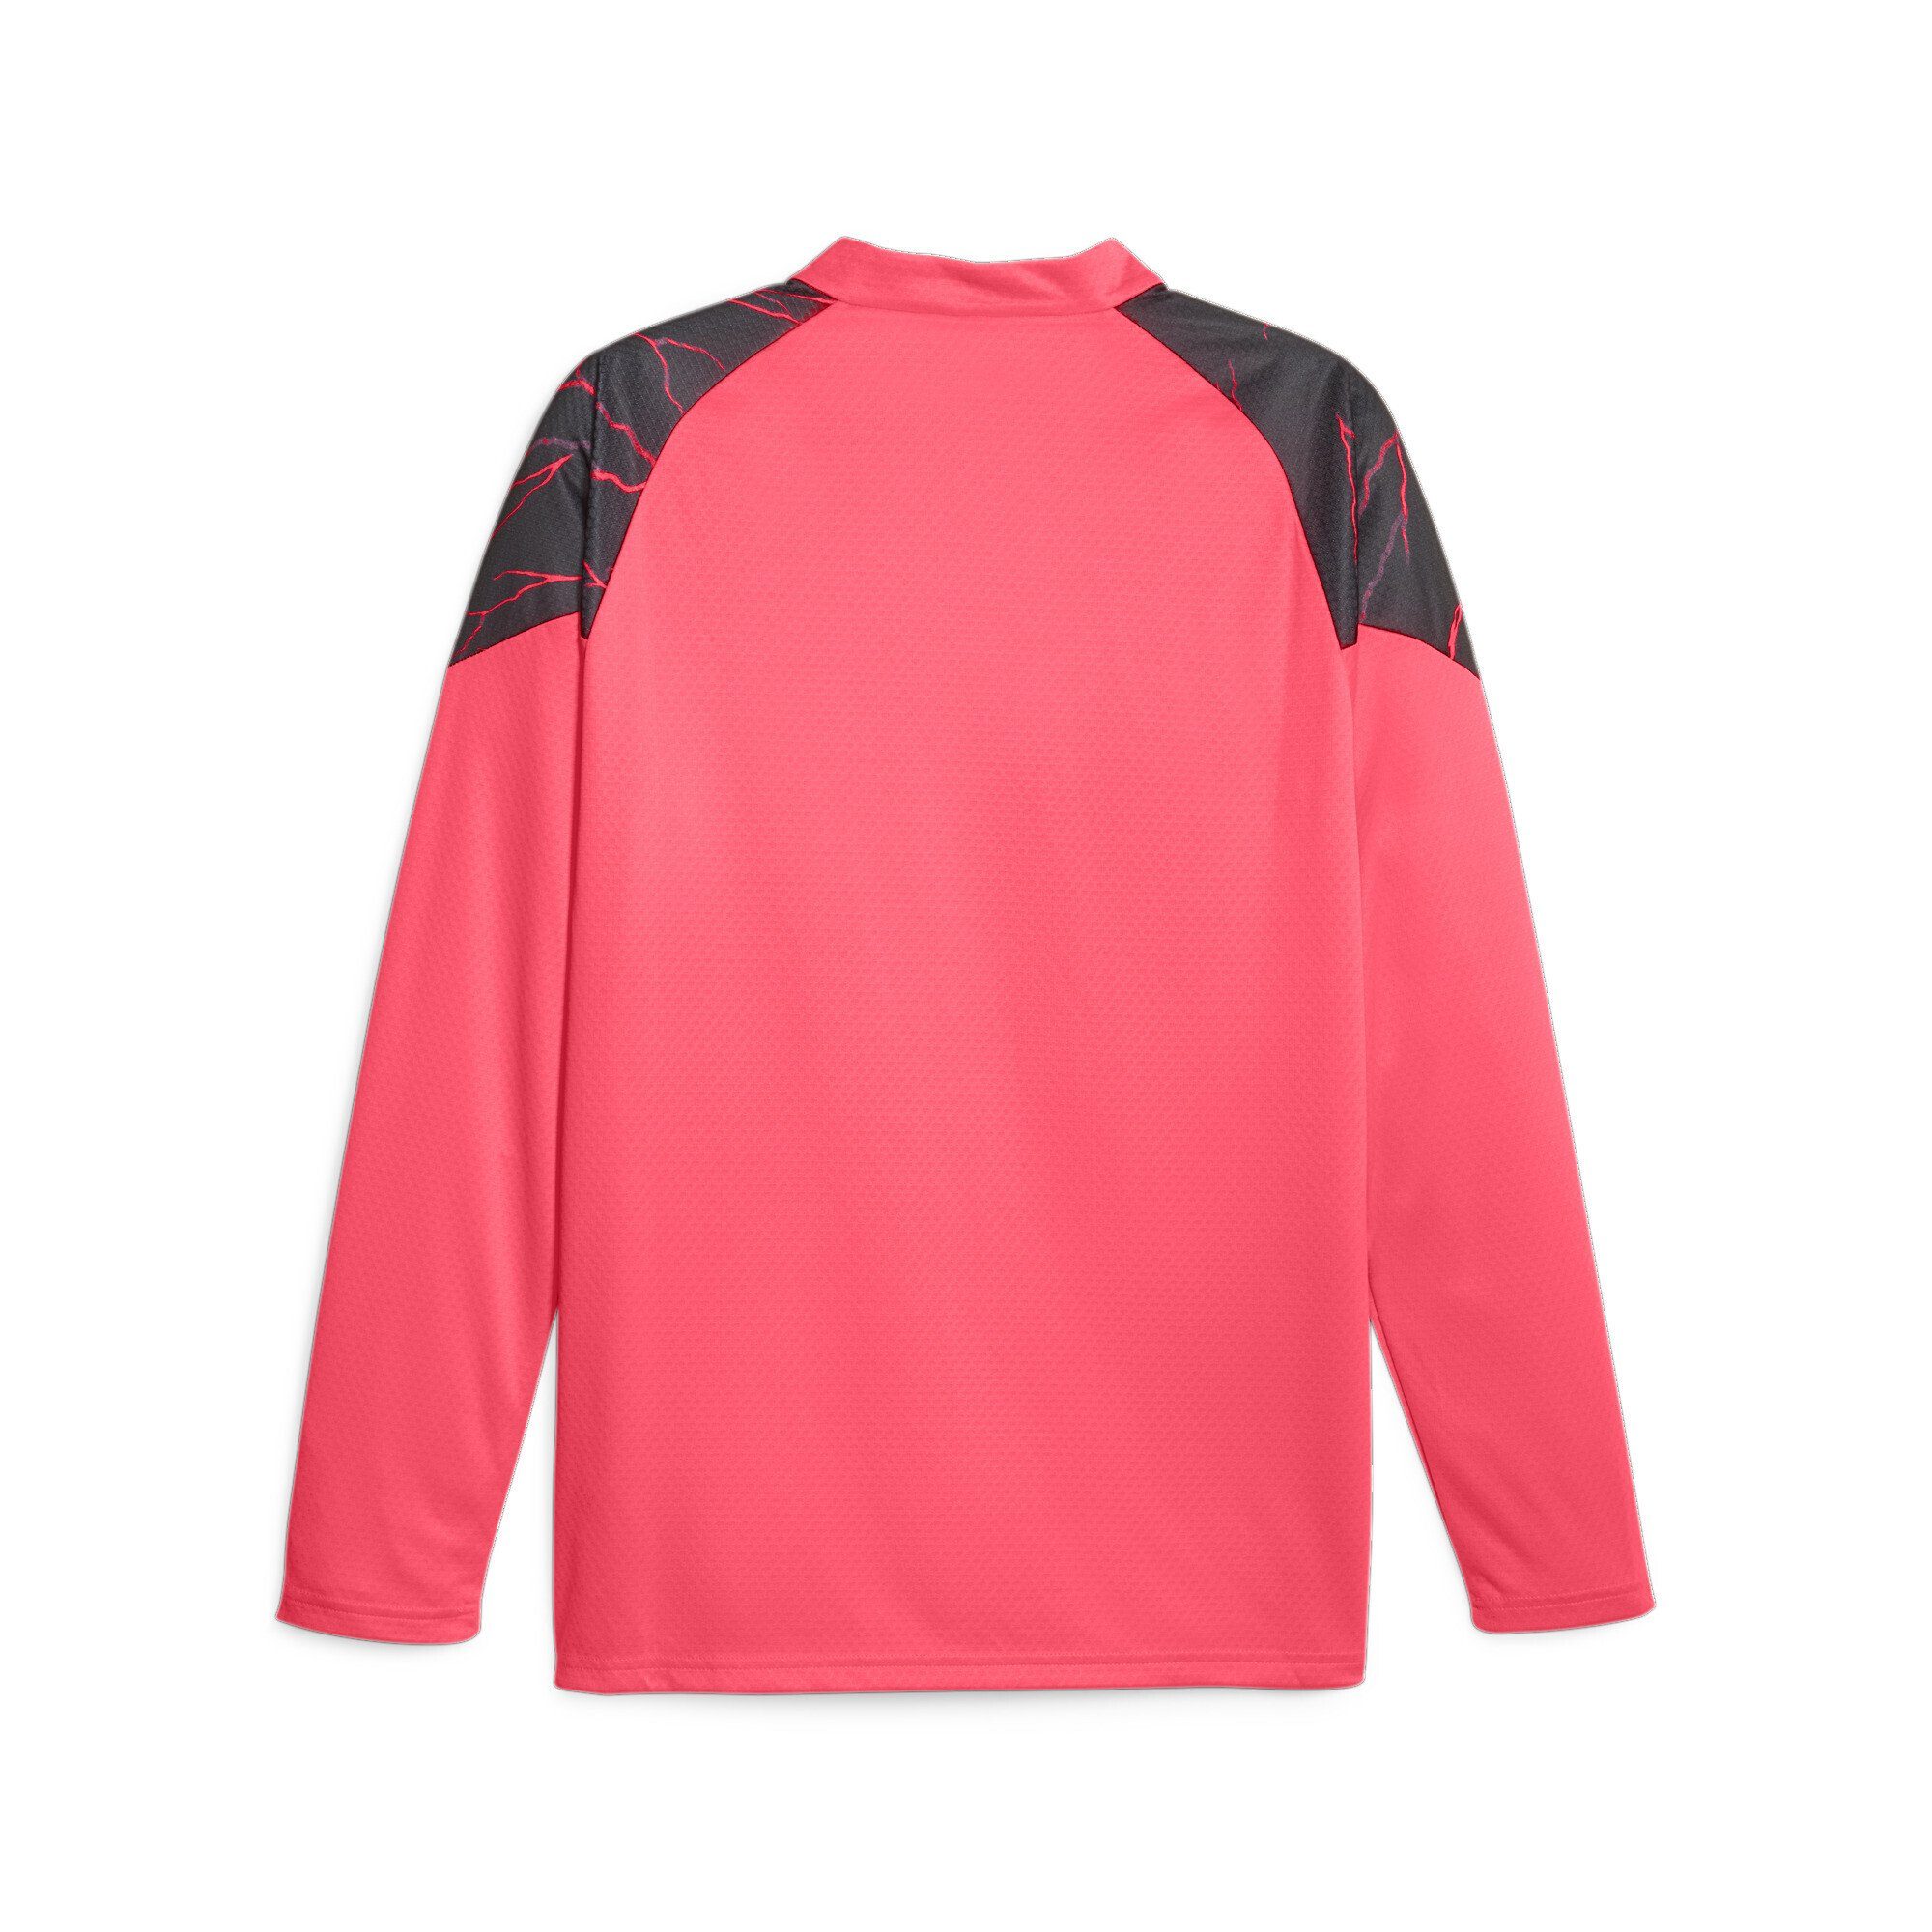 Fußball-Trainings-Top Black City Manchester Pink mit Sunset Navy Viertelreißverschluss PUMA Dark Trainingsshirt Glow